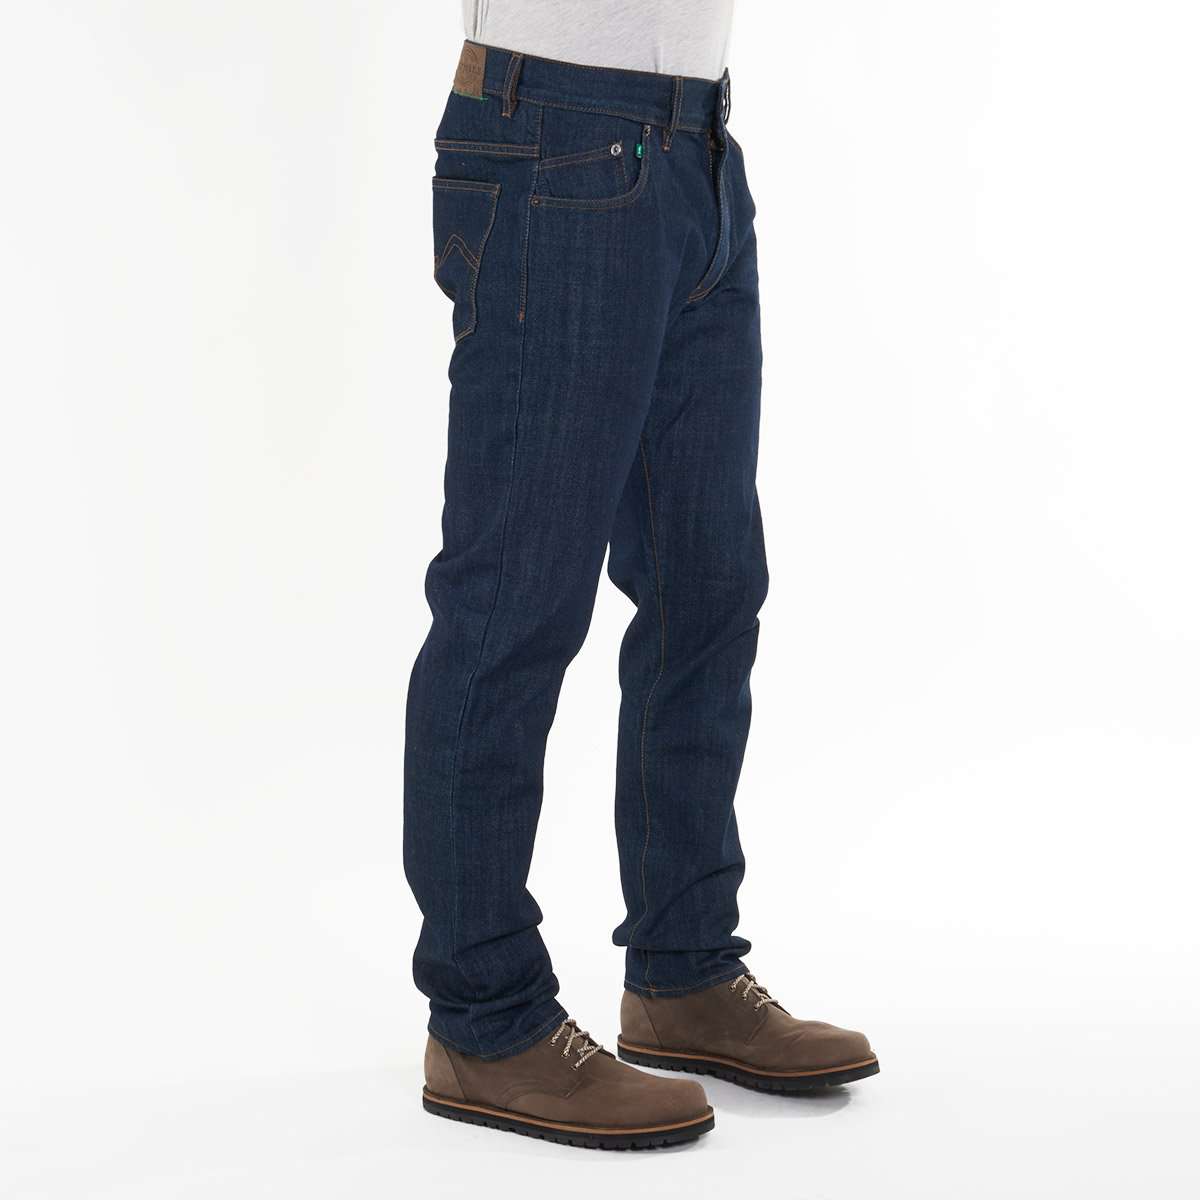 Nachhaltige Herren-Jeans von fairjeans: 100% Bio-Baumwolle, Regular Fit, kein Elasthan